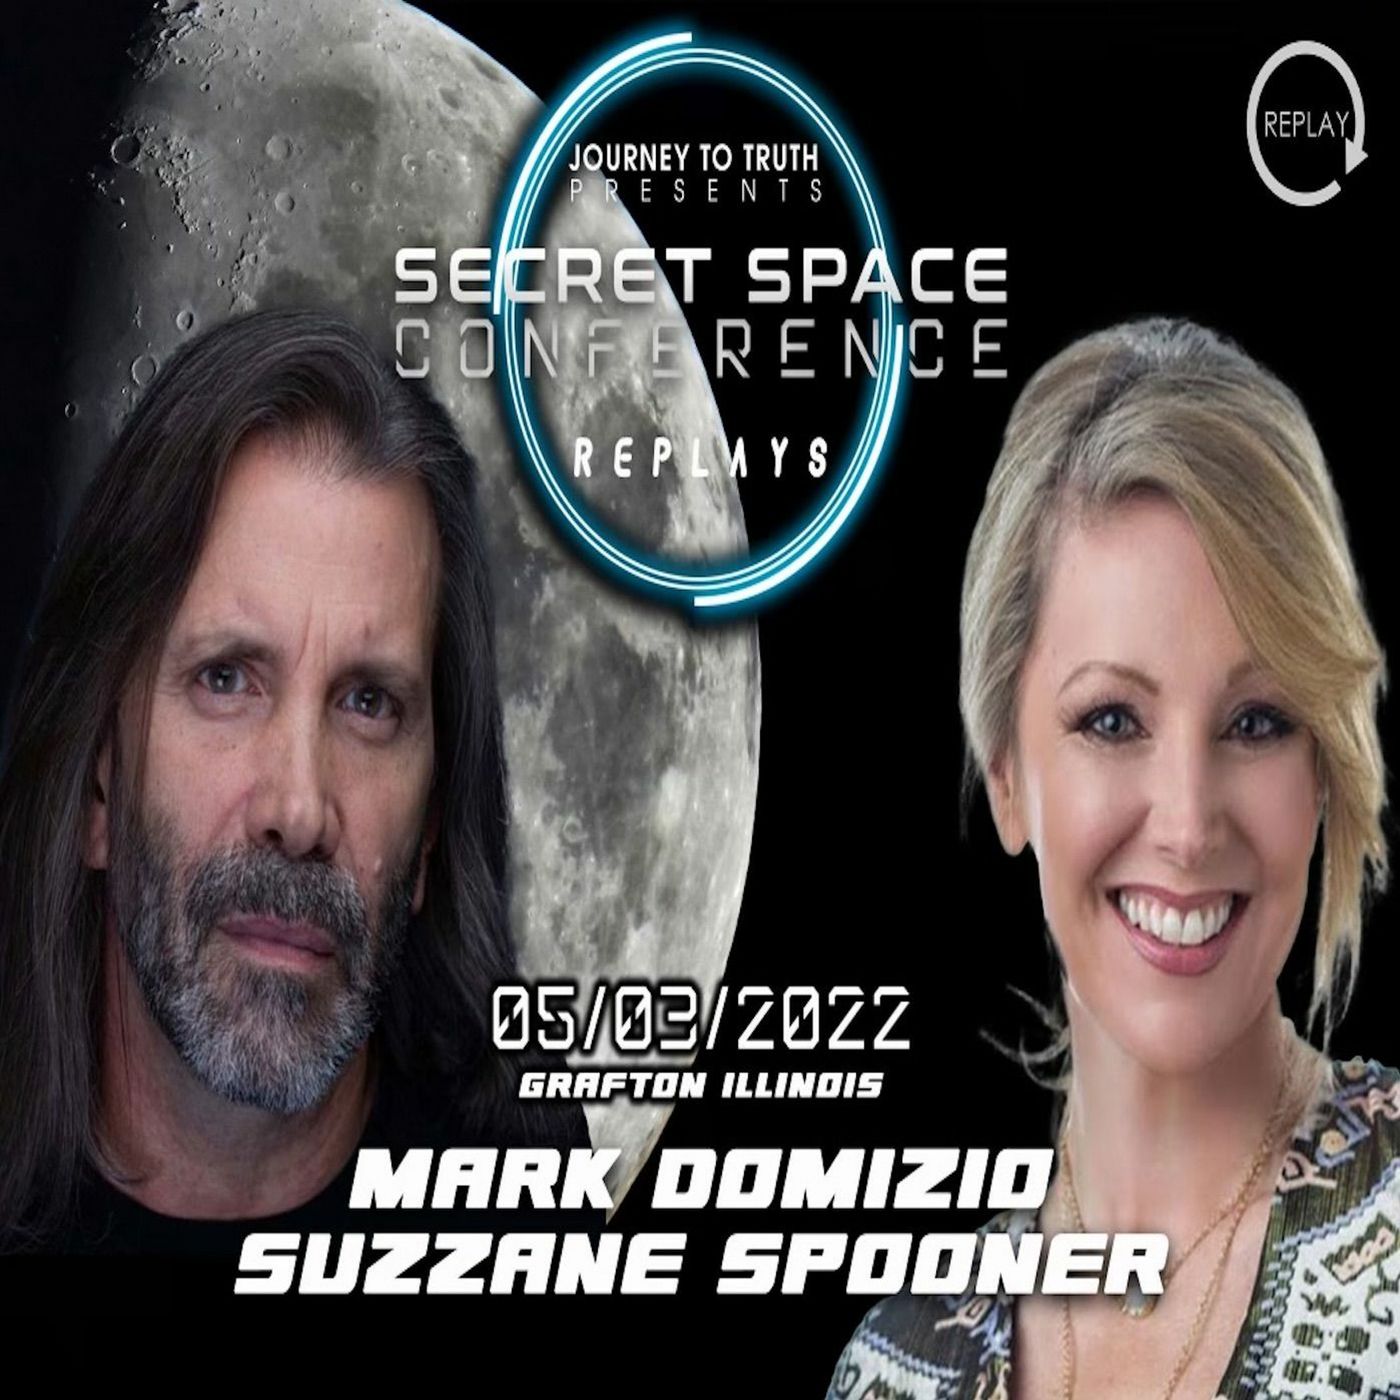 Mark Domizio and Suzanne Spooner - Secret Space Conference - 5/3/22